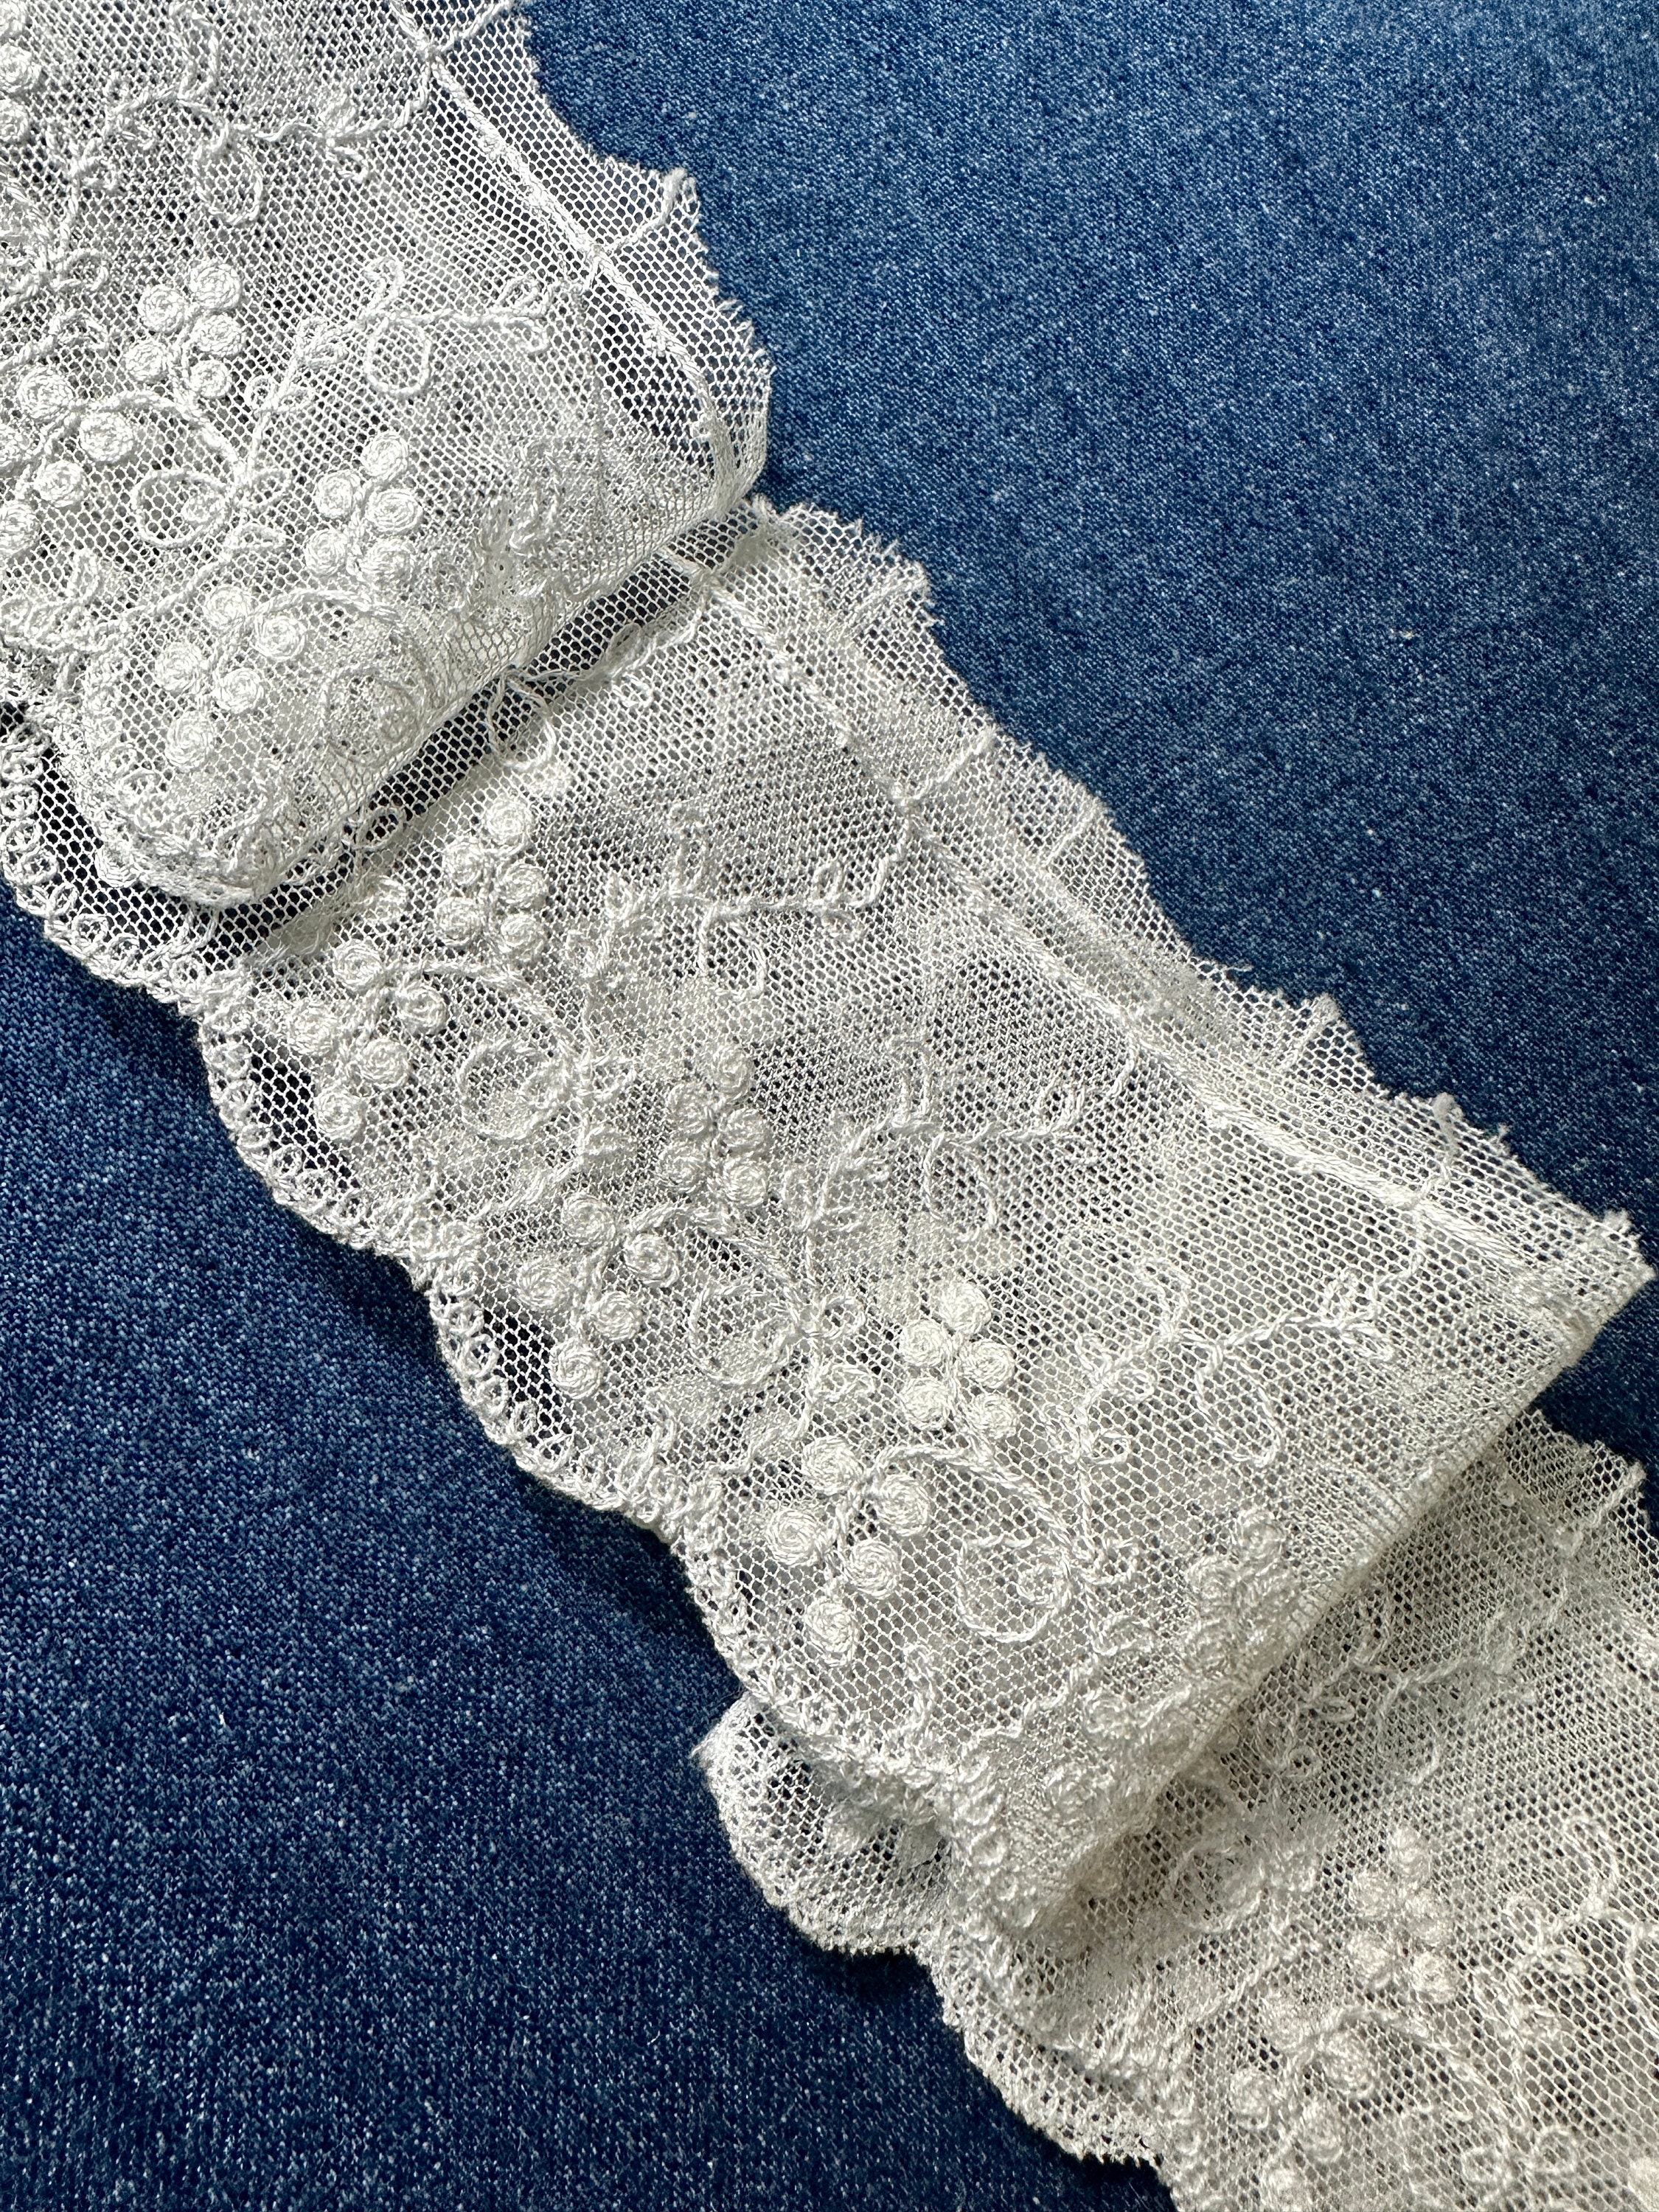 Net Lace Fabric 